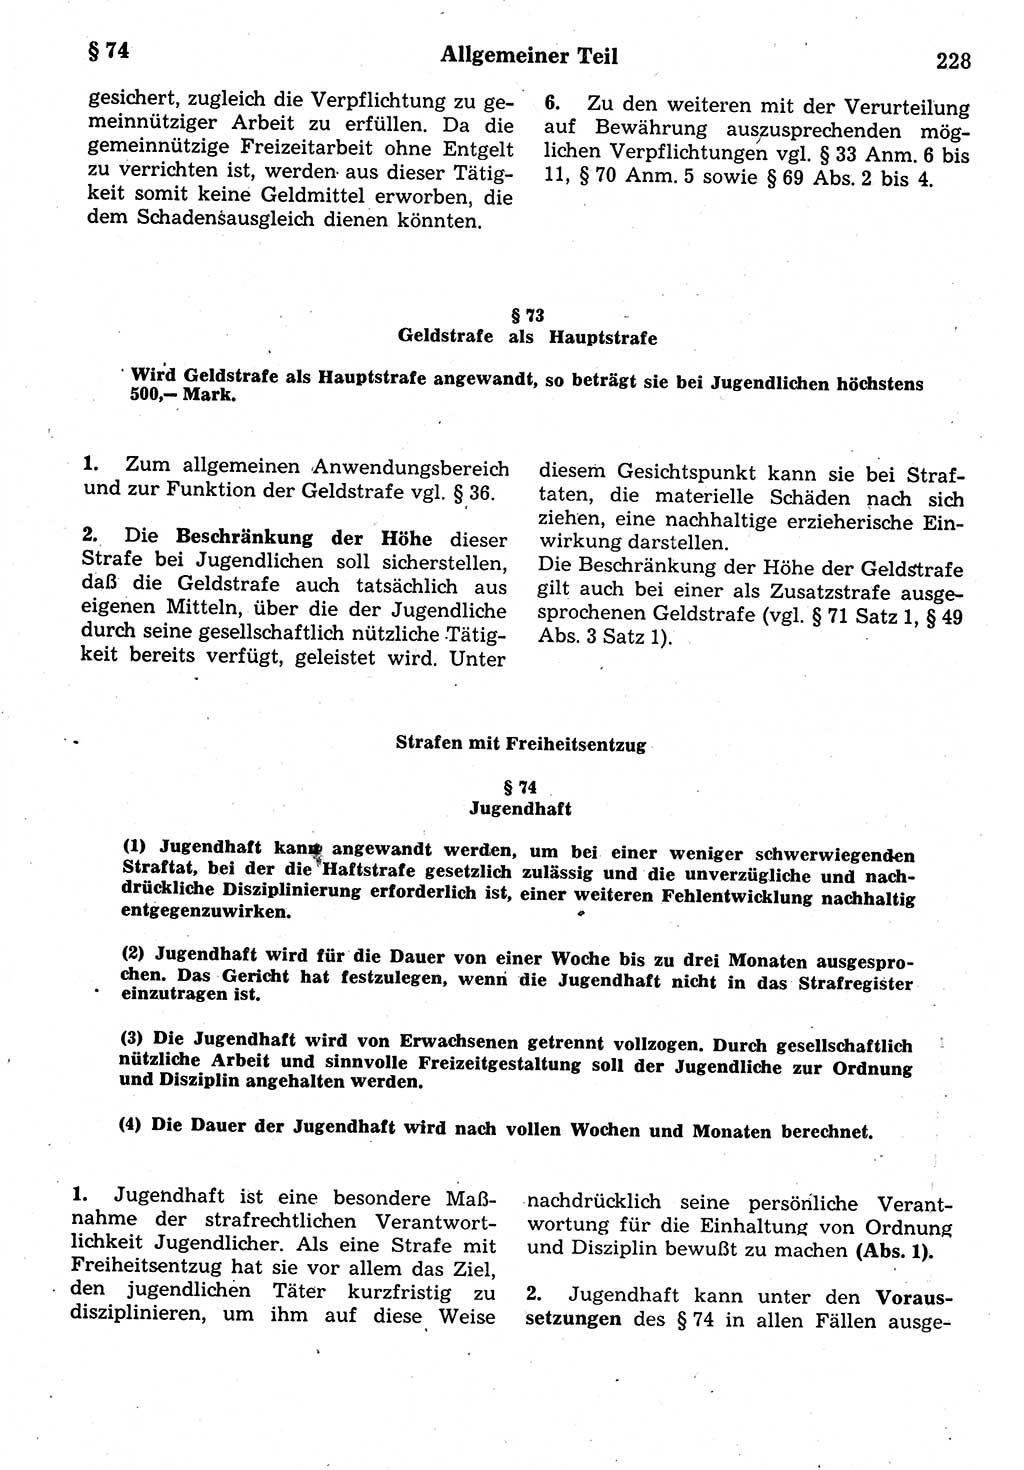 Strafrecht der Deutschen Demokratischen Republik (DDR), Kommentar zum Strafgesetzbuch (StGB) 1987, Seite 228 (Strafr. DDR Komm. StGB 1987, S. 228)